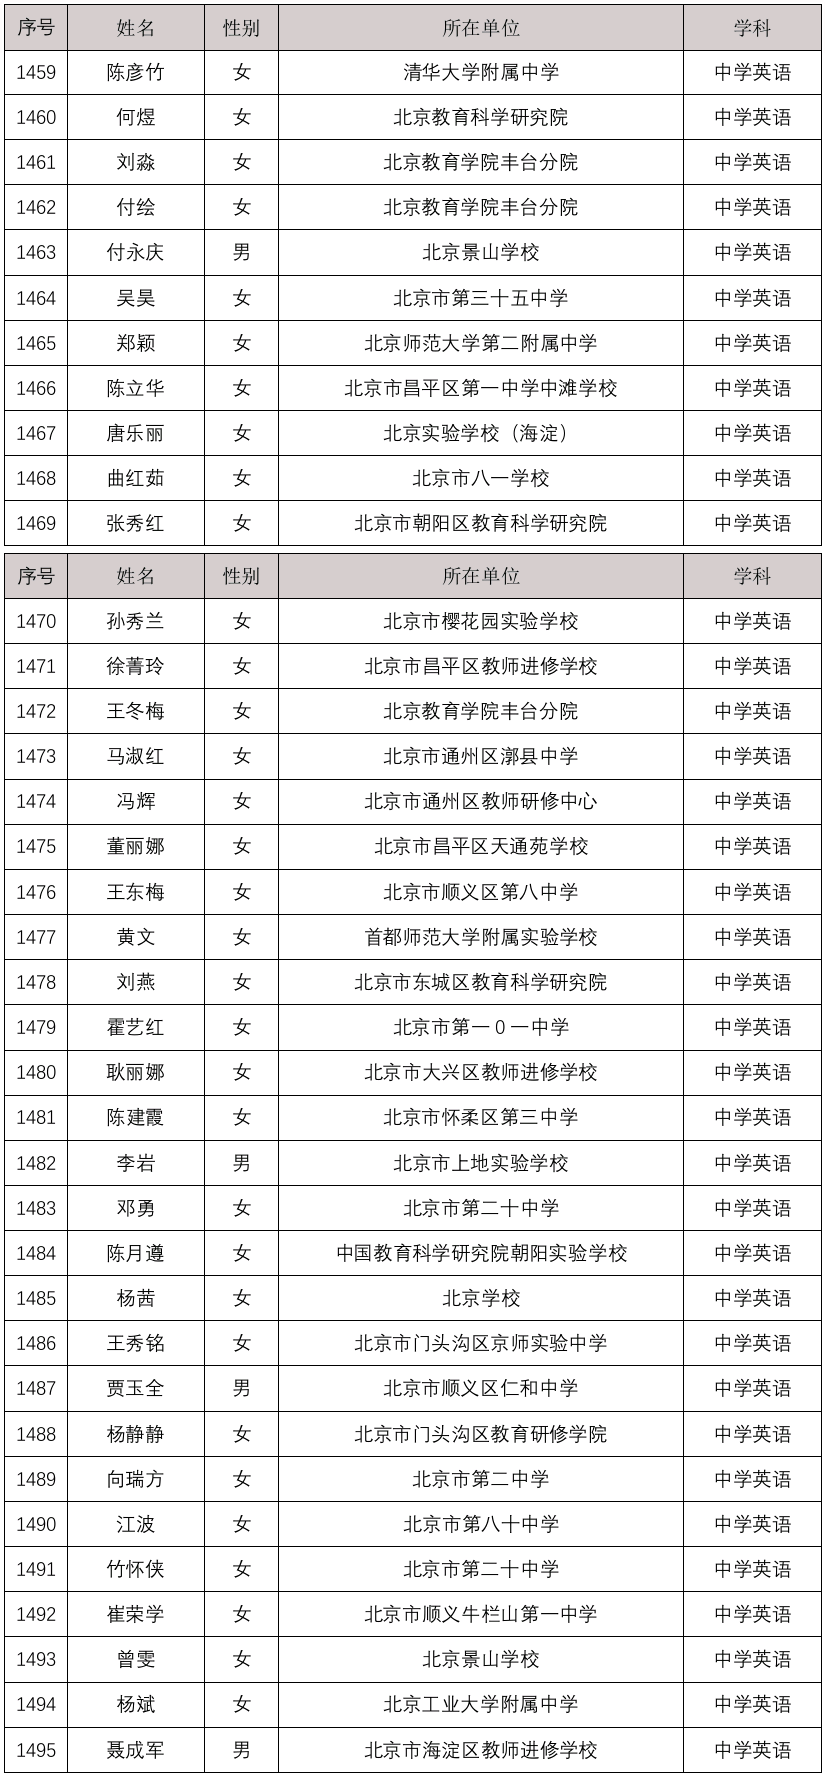 塔子坝中学老师名单图片